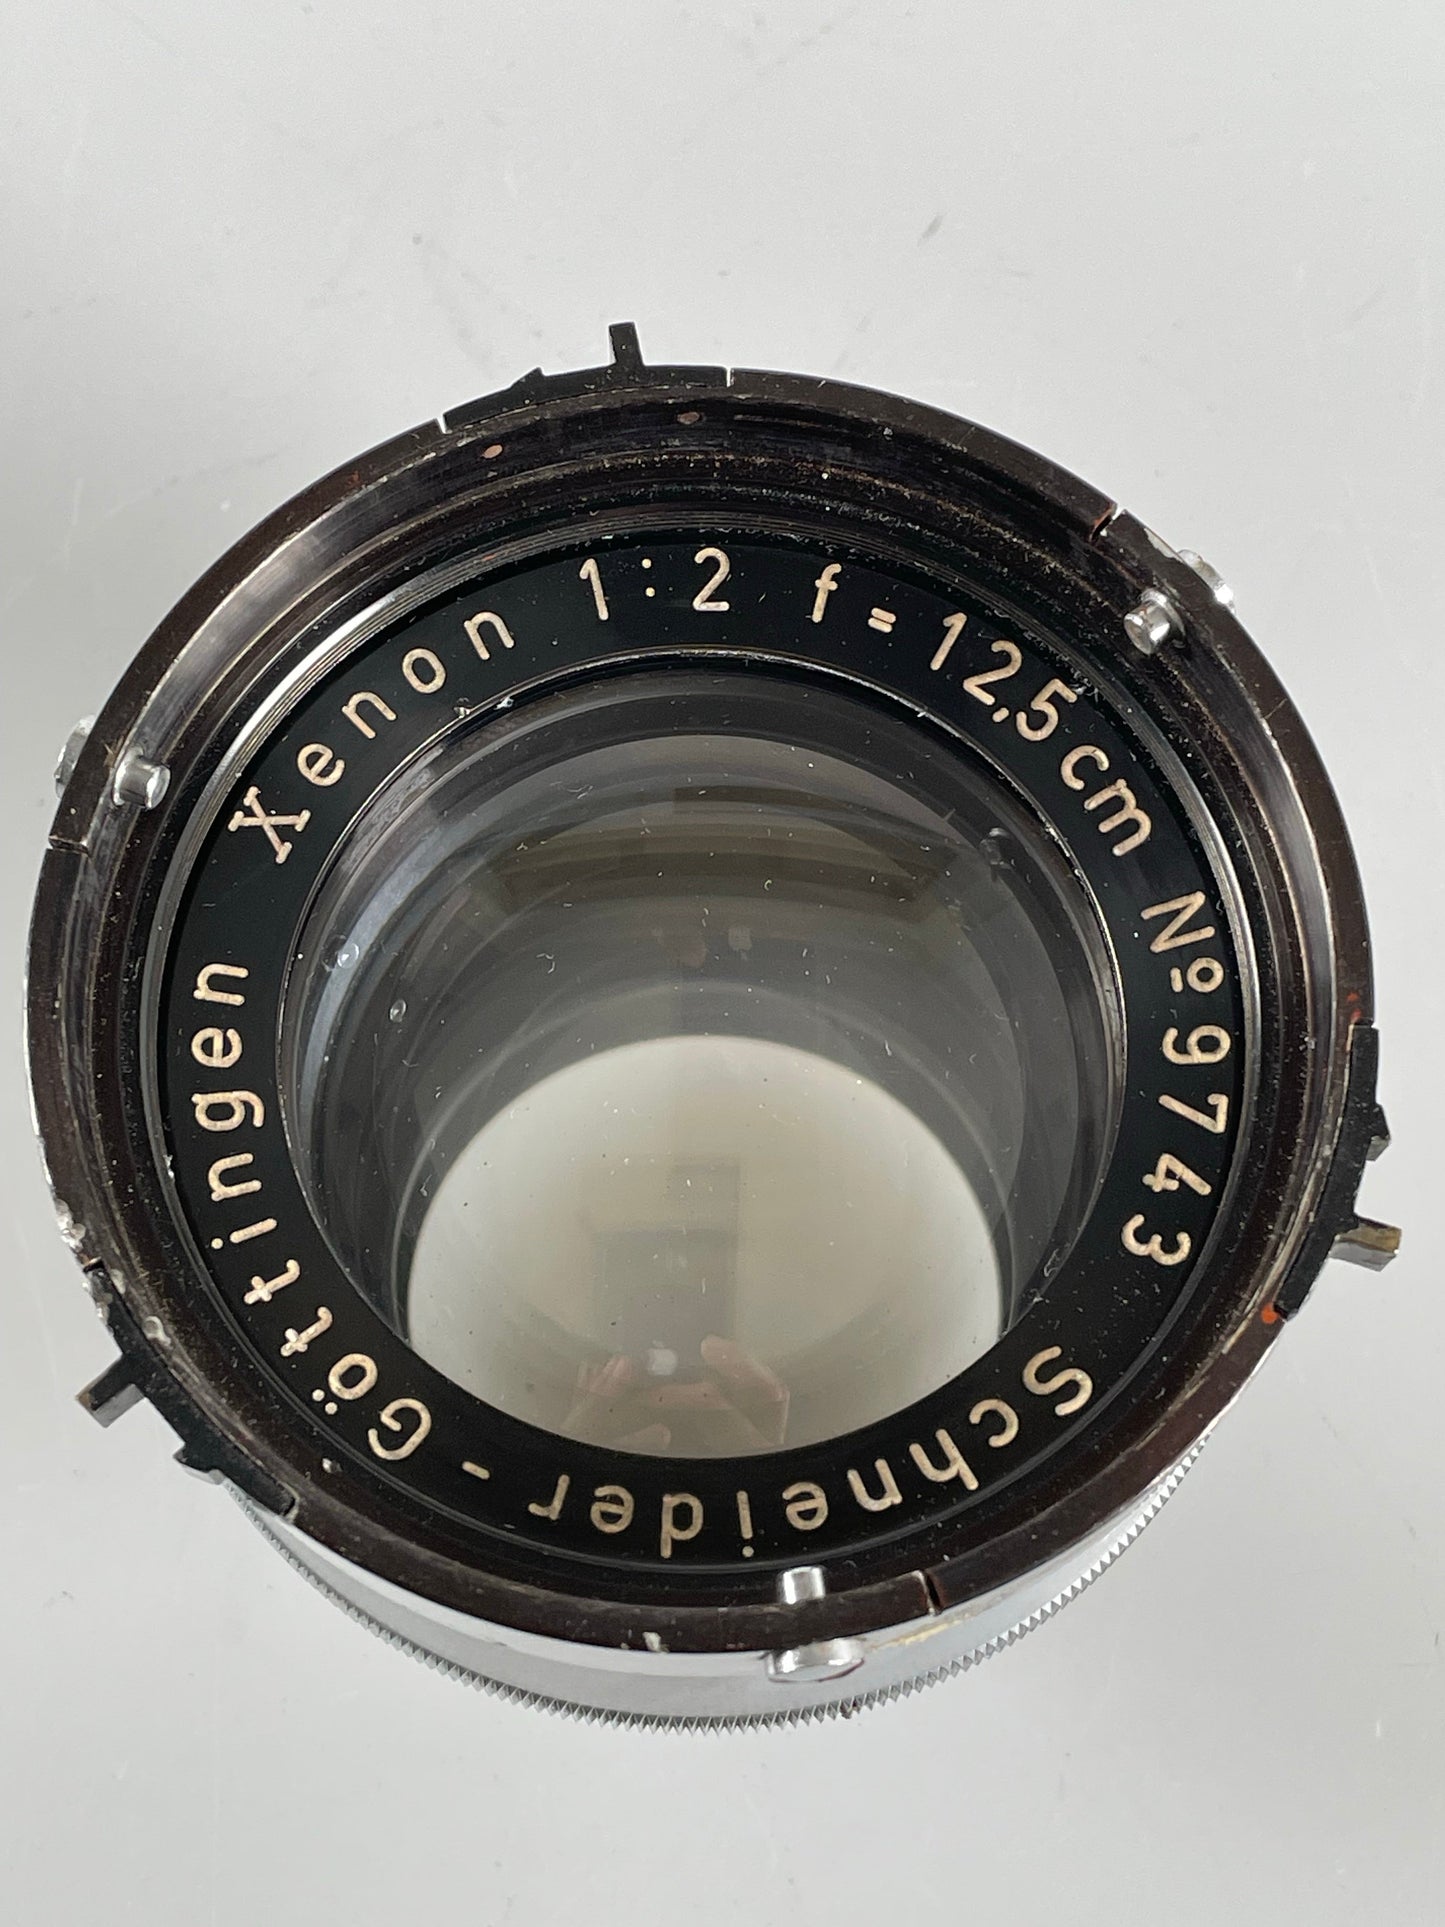 Gottingen Schneider Xenon 12.5cm  F2 Aerial Lens with orange filter